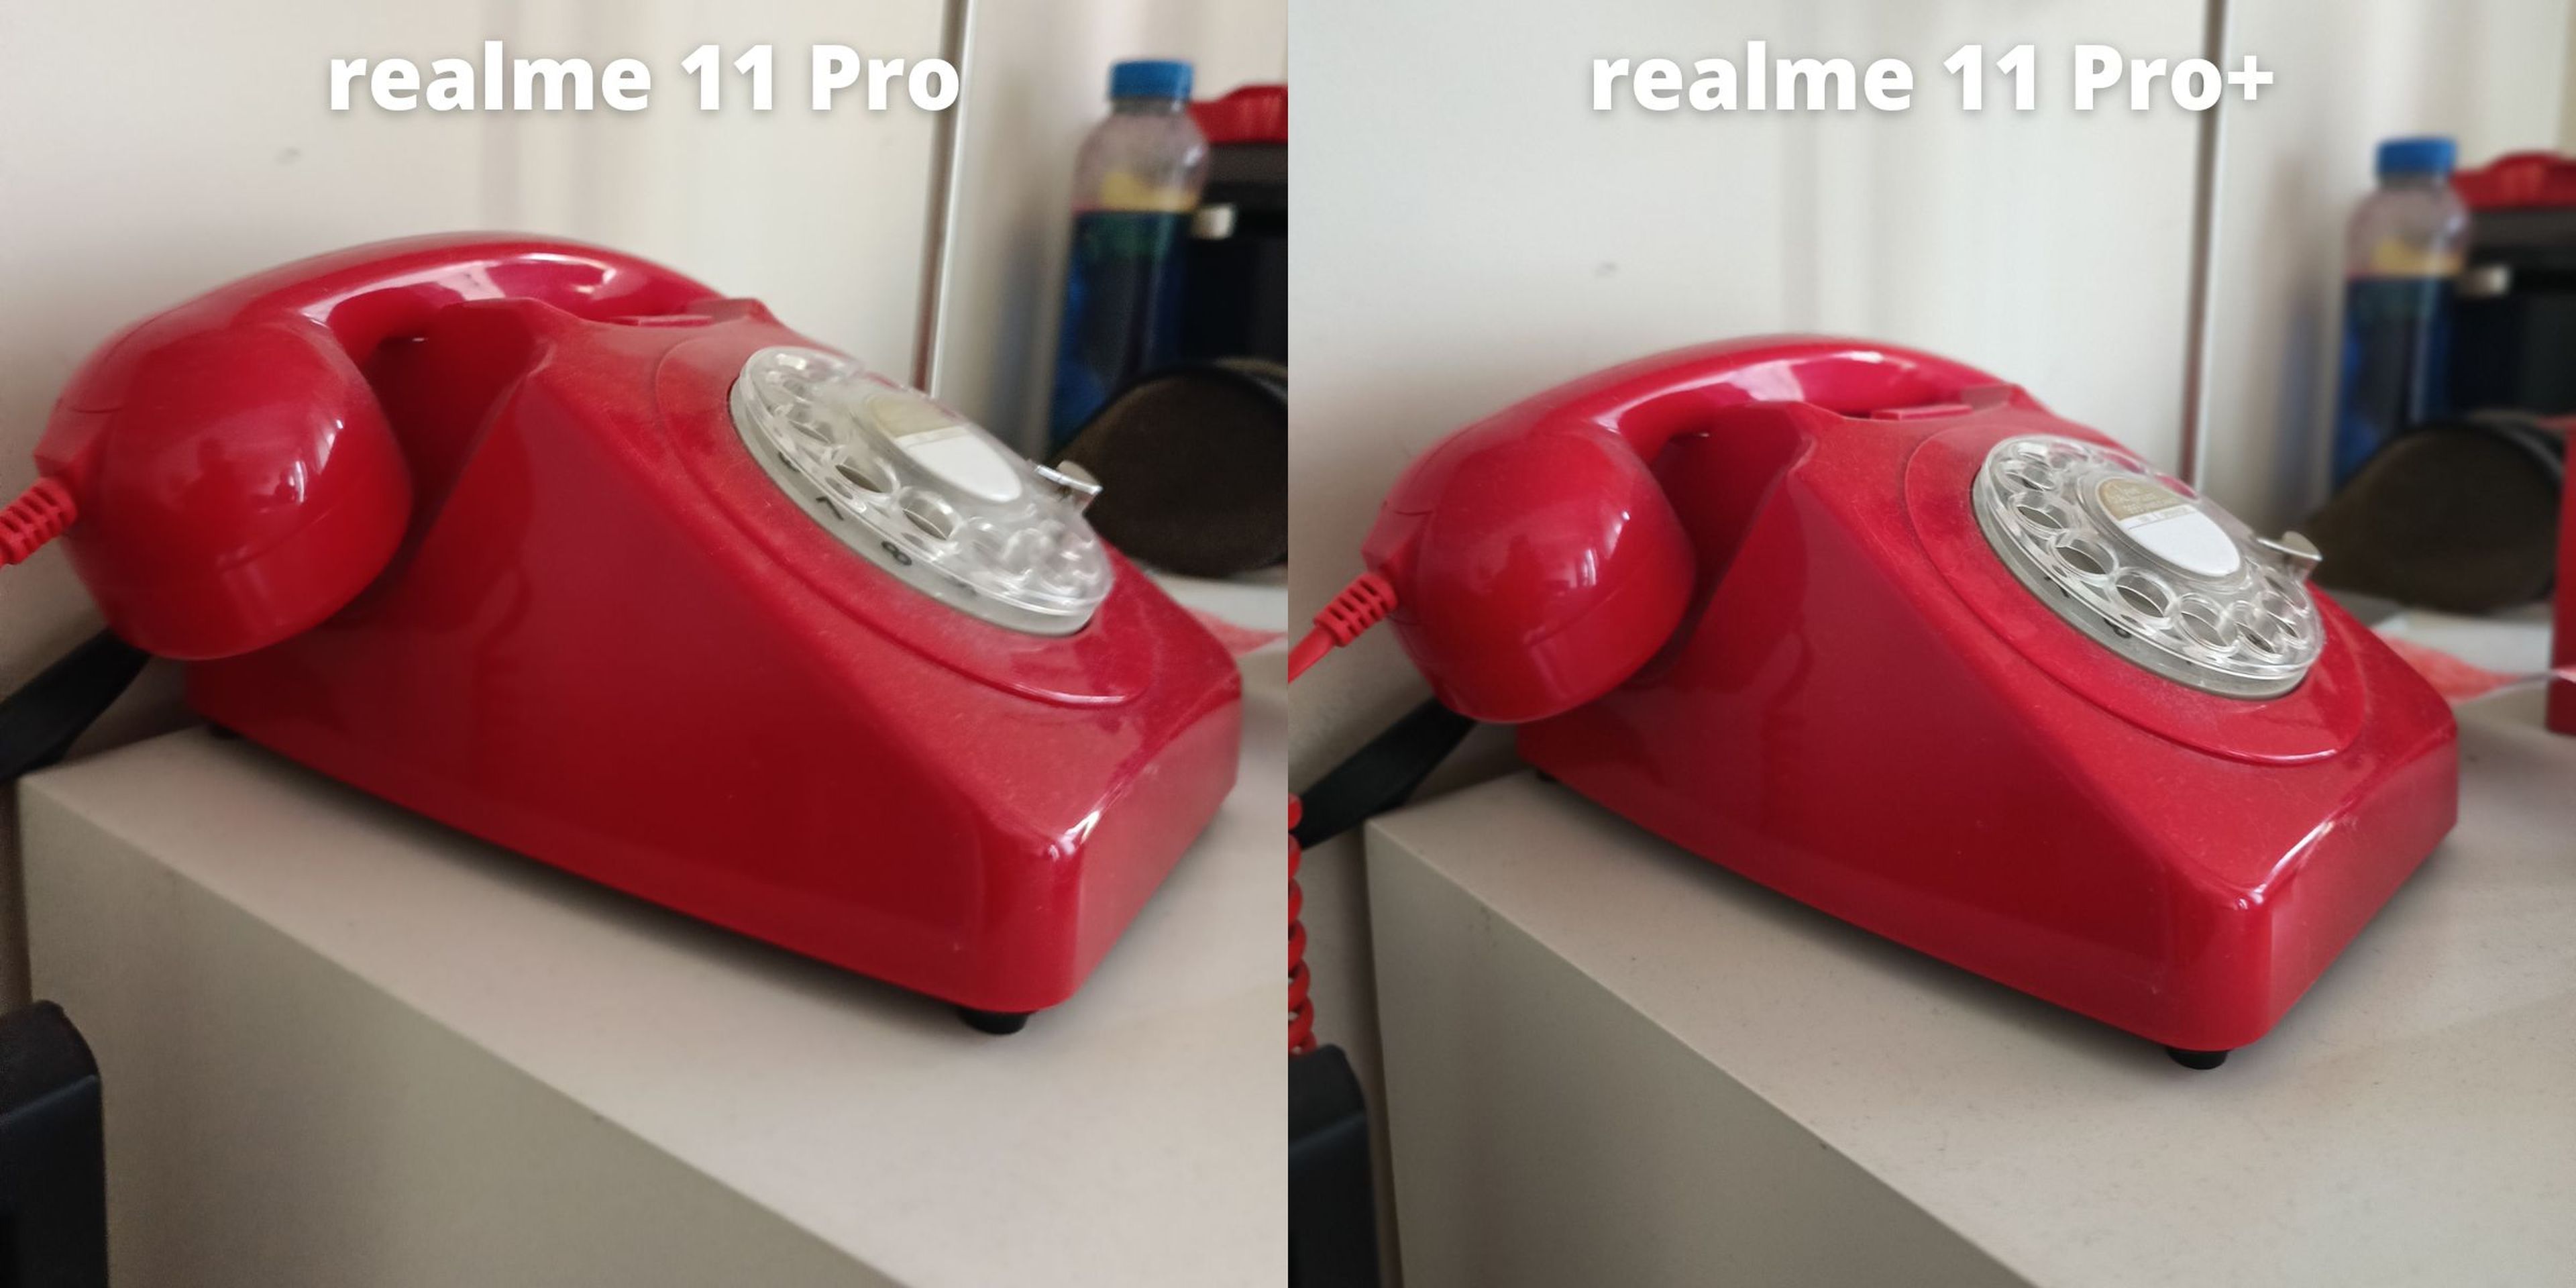 realme 11 Pro vs realme 11 Pro+